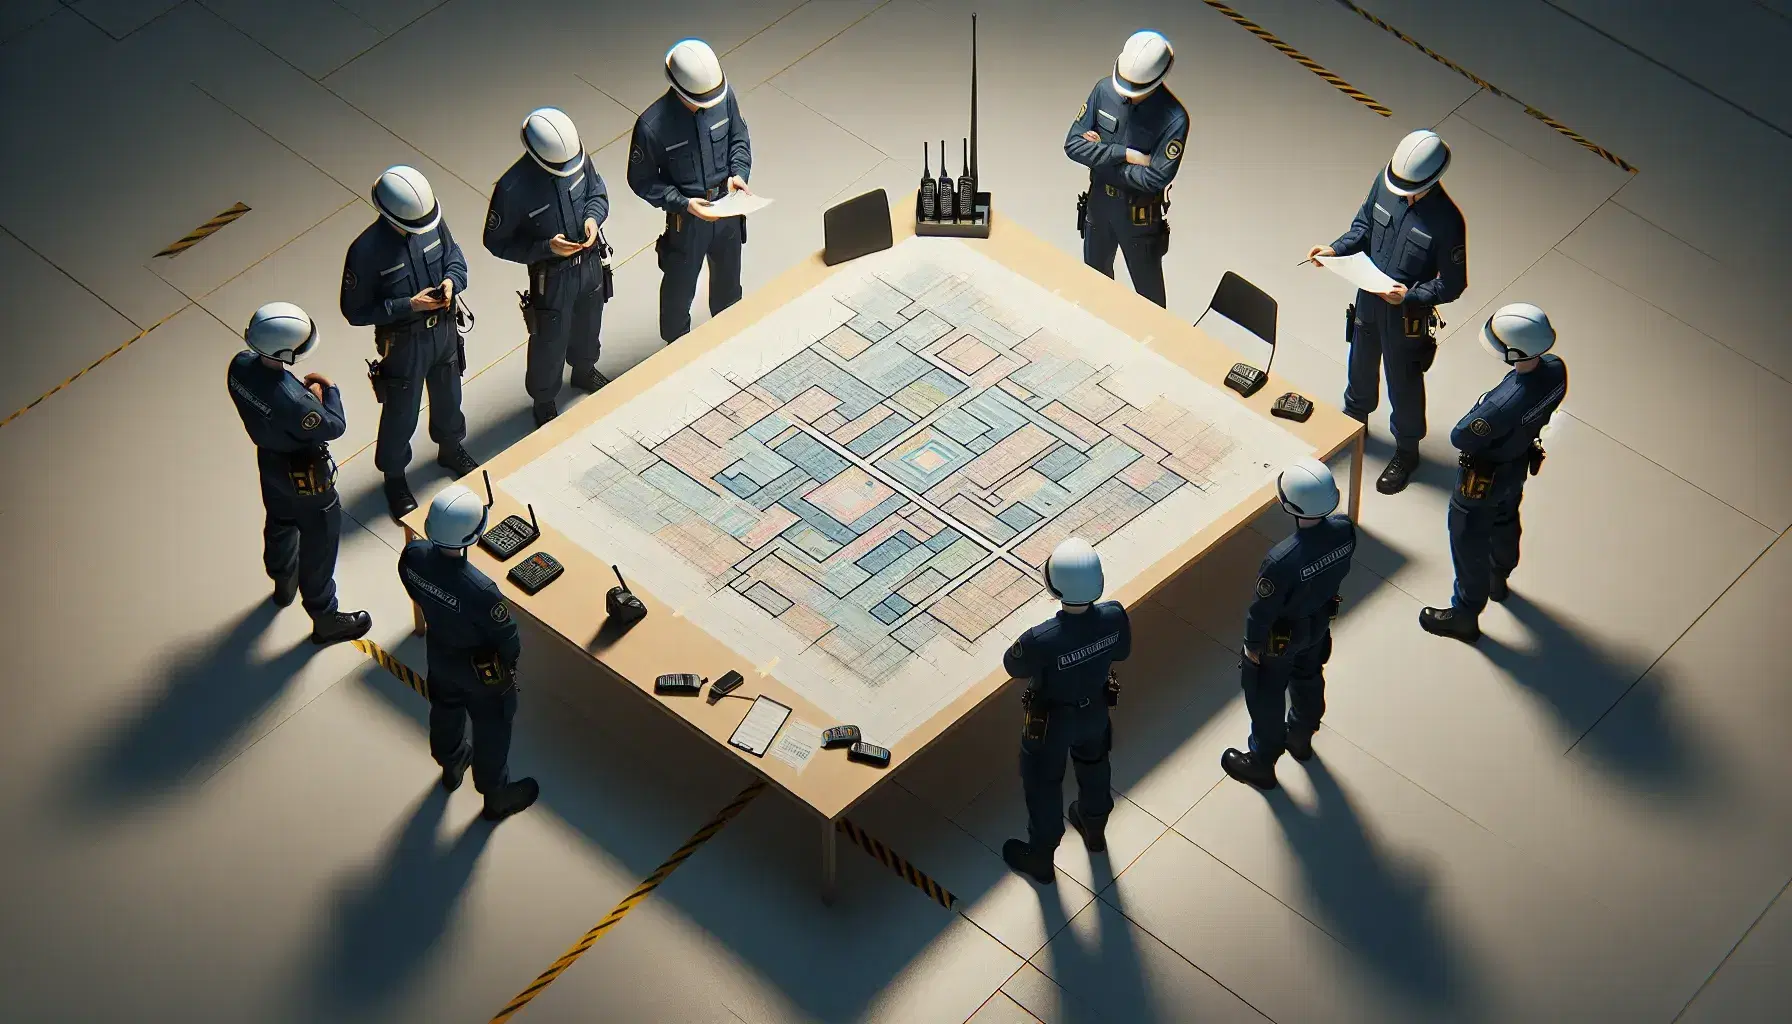 Equipo de cinco profesionales en uniformes azules y cascos blancos analiza planos en mesa con teléfonos y cascos adicionales en ambiente laboral iluminado.